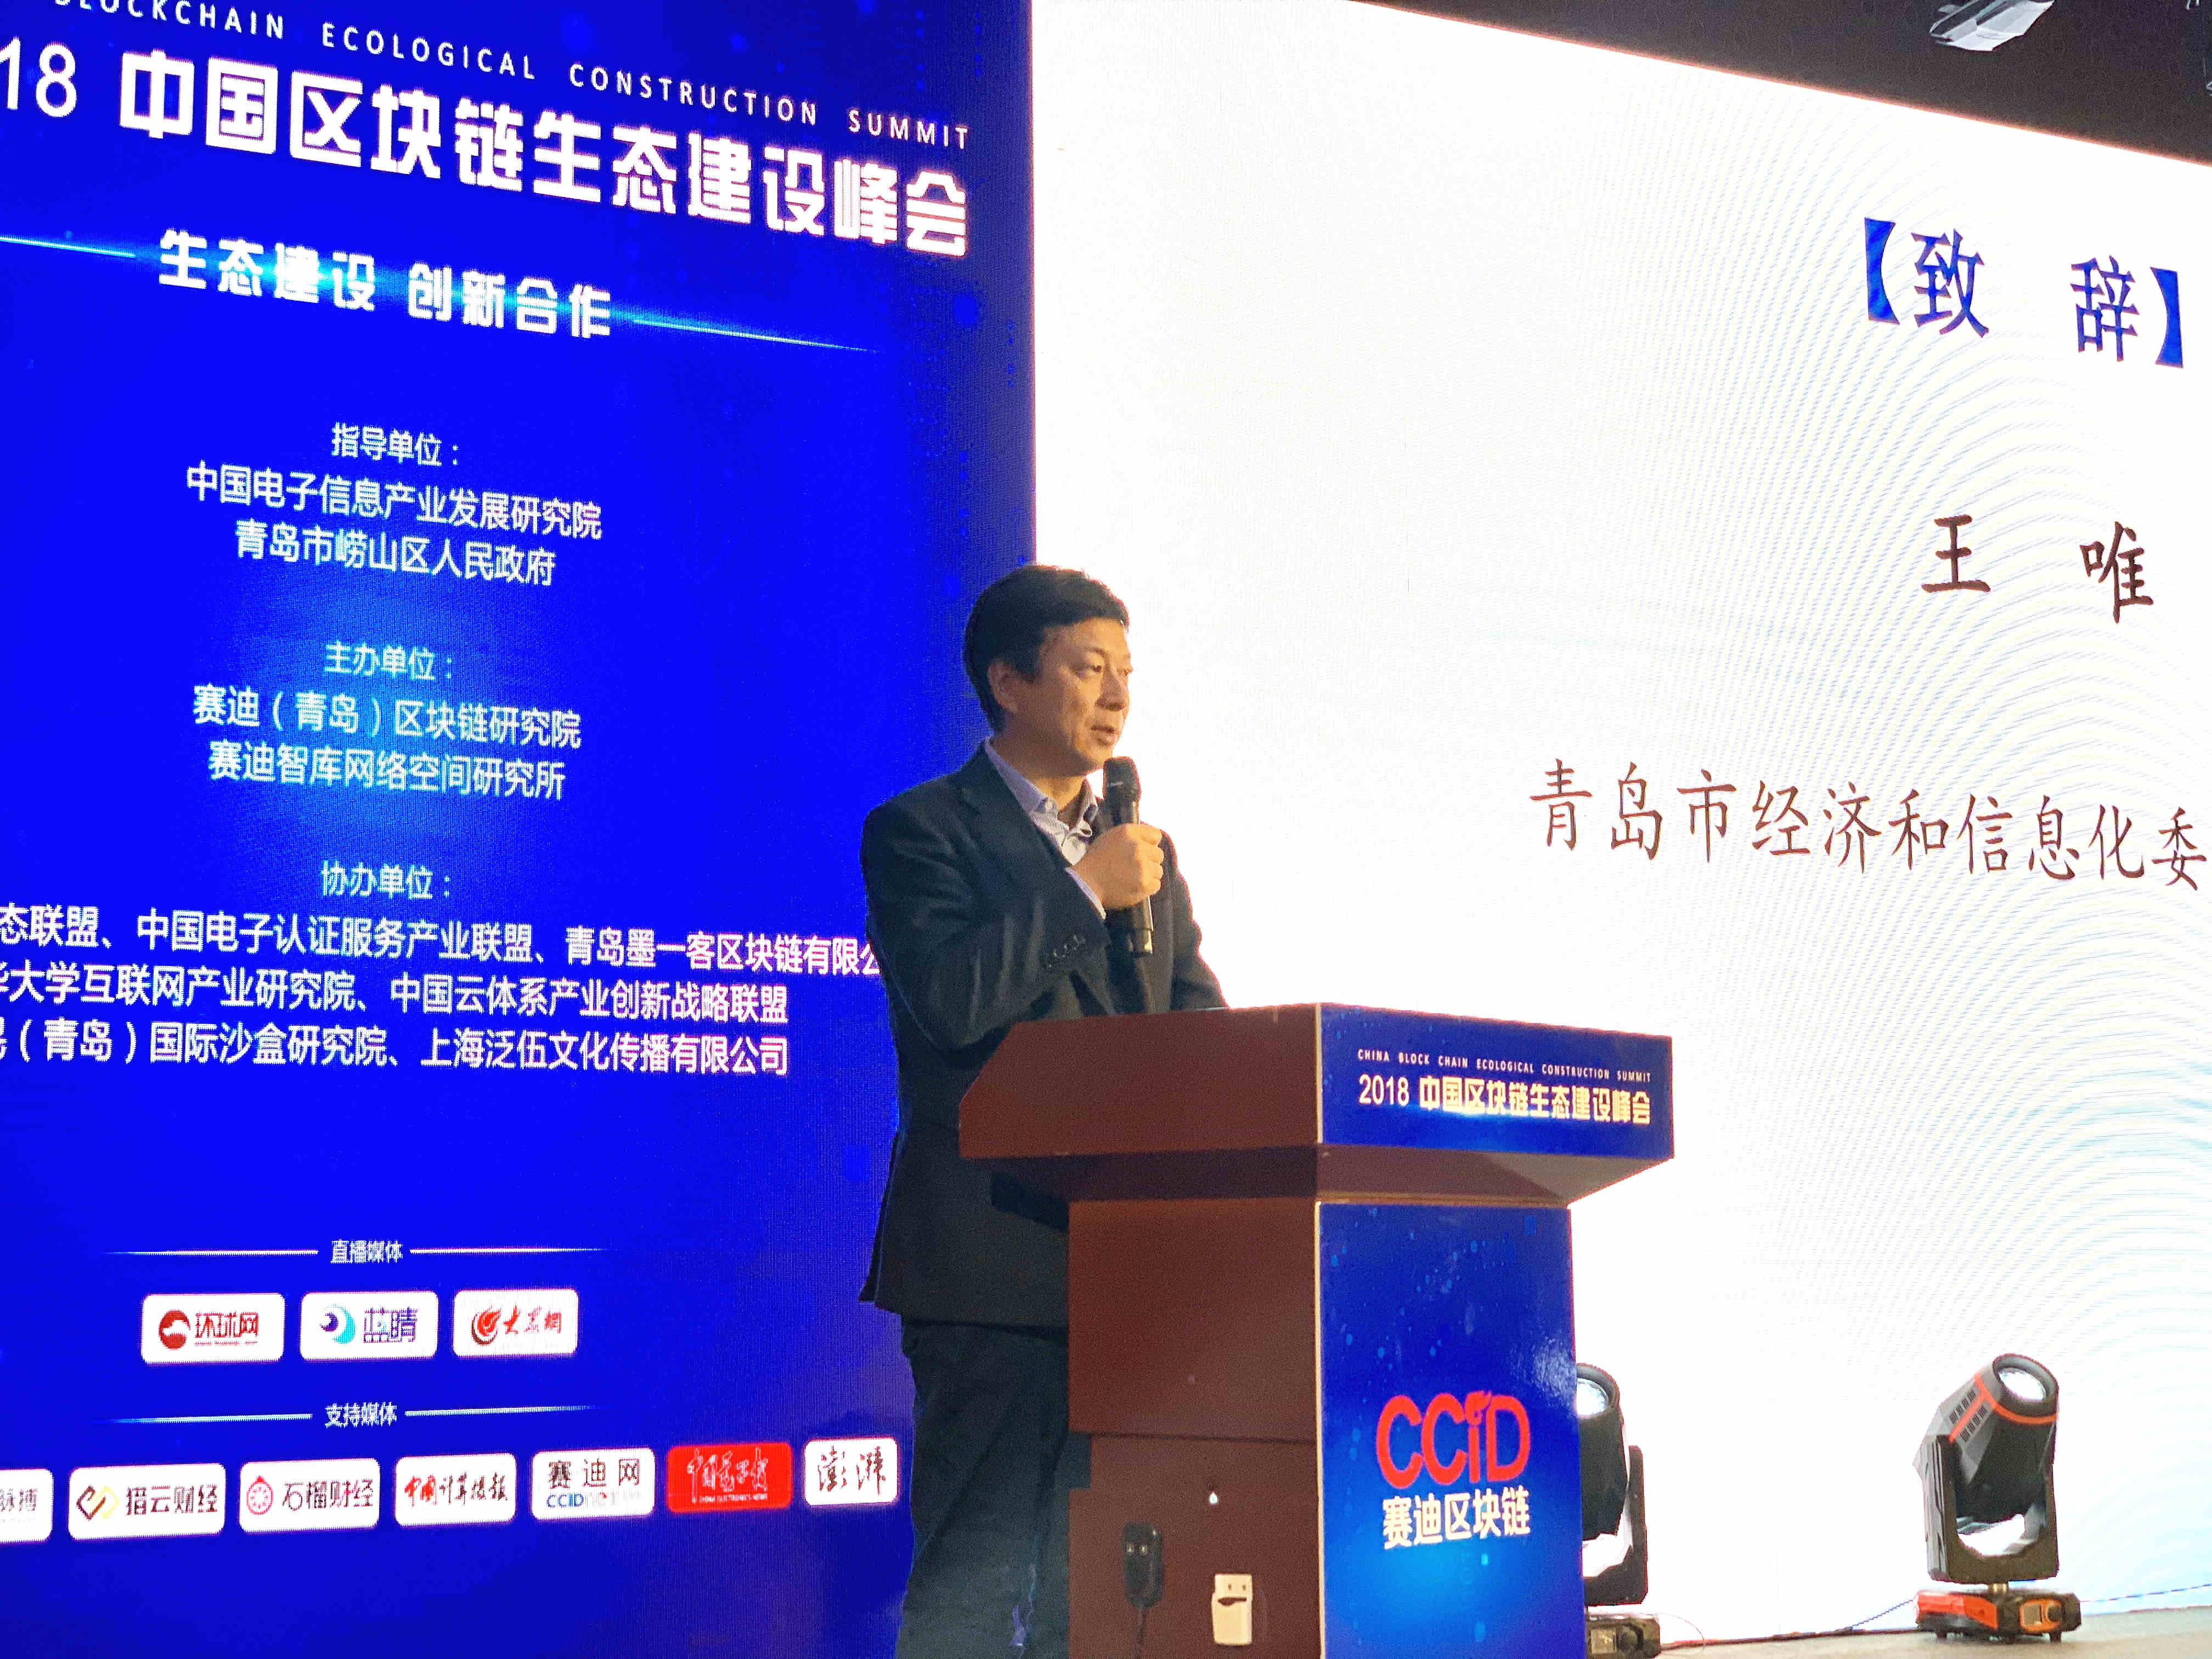 生态建设 创新合作 2018中国区块链生态建设峰会在青岛召开